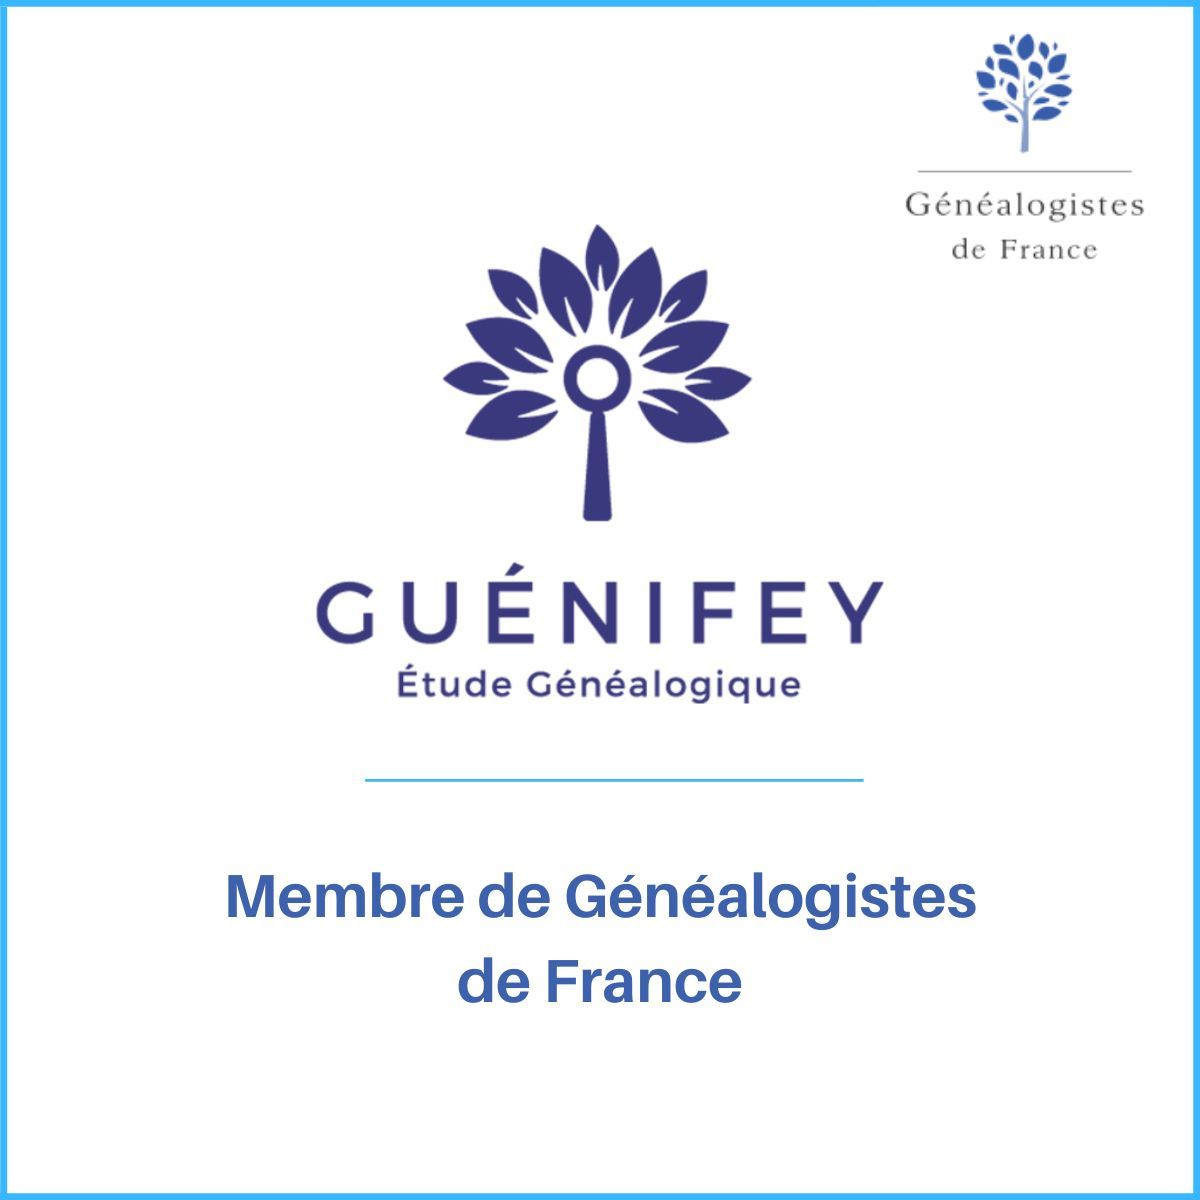 Généalogistes de France salue l’adhésion de l’Étude Généalogique Guénifey.